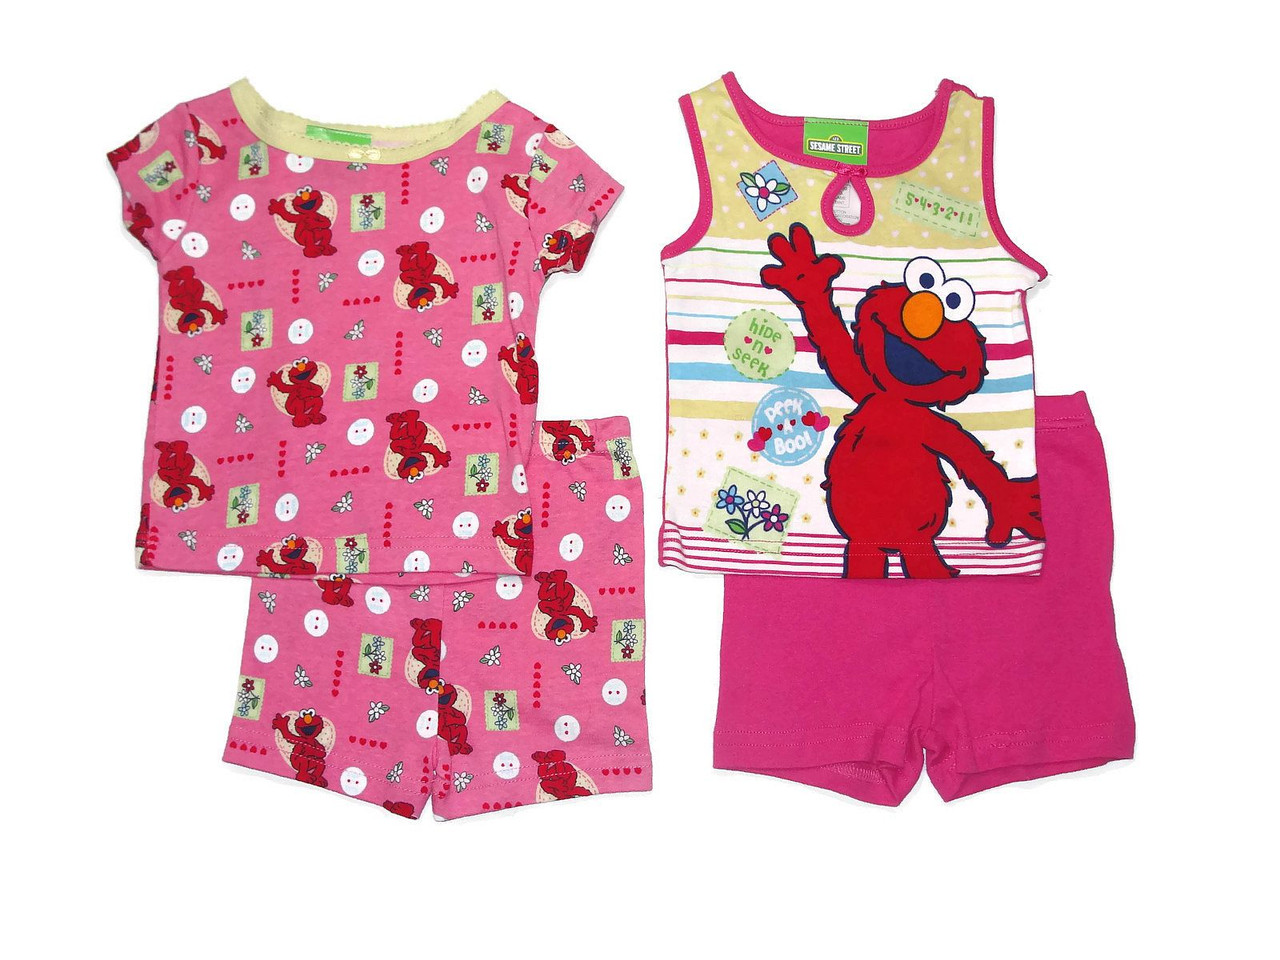 Sesame Street Baby Girls Elmo and Abby Cadabby Pajamas